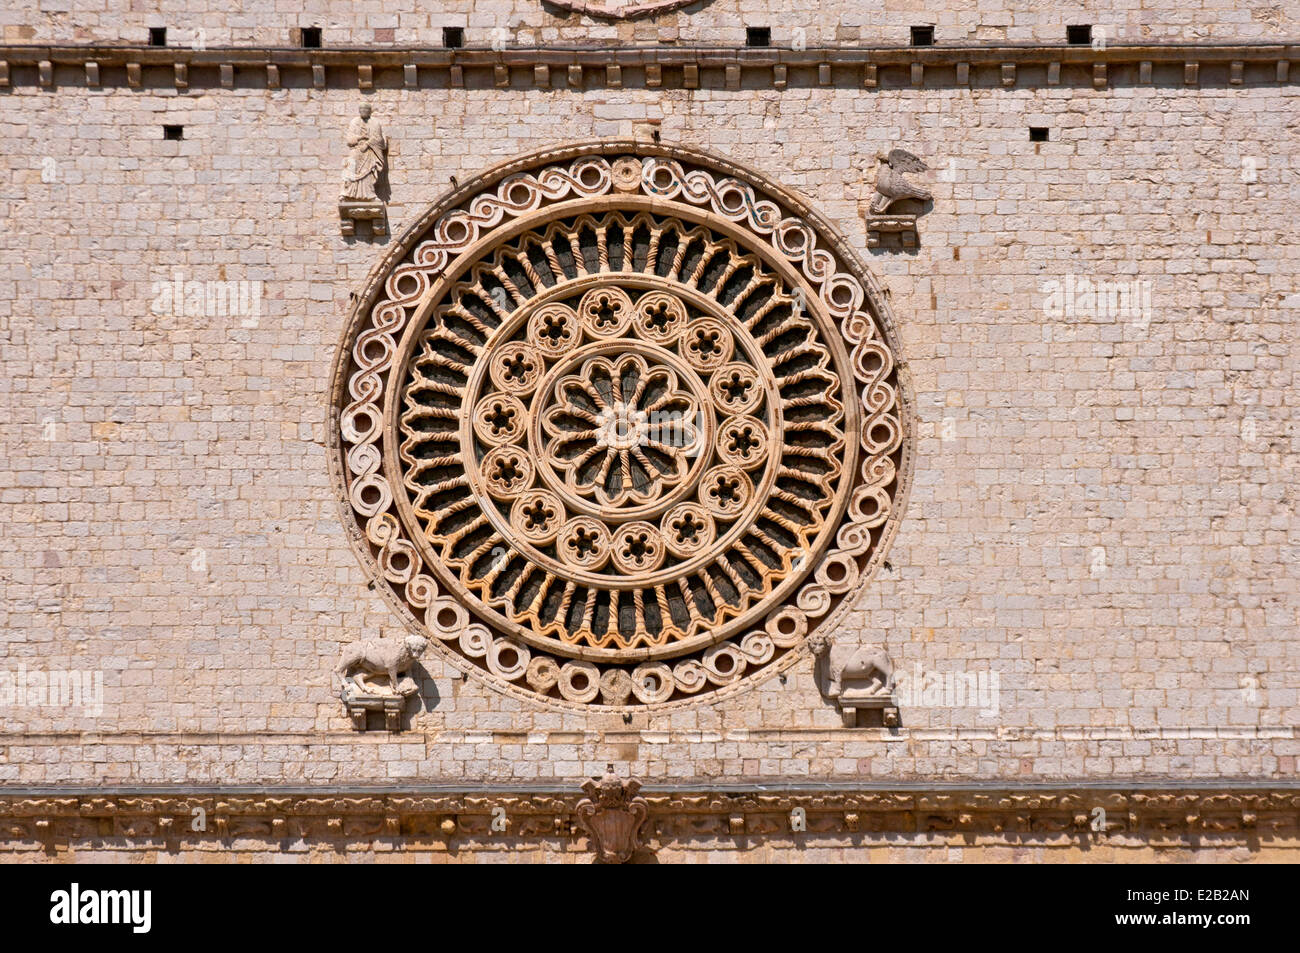 Italien, Umbrien, Assisi, Basilika des Heiligen Franziskus 12. Jahrhundert, von der UNESCO als Welterbe gelistet Stockfoto